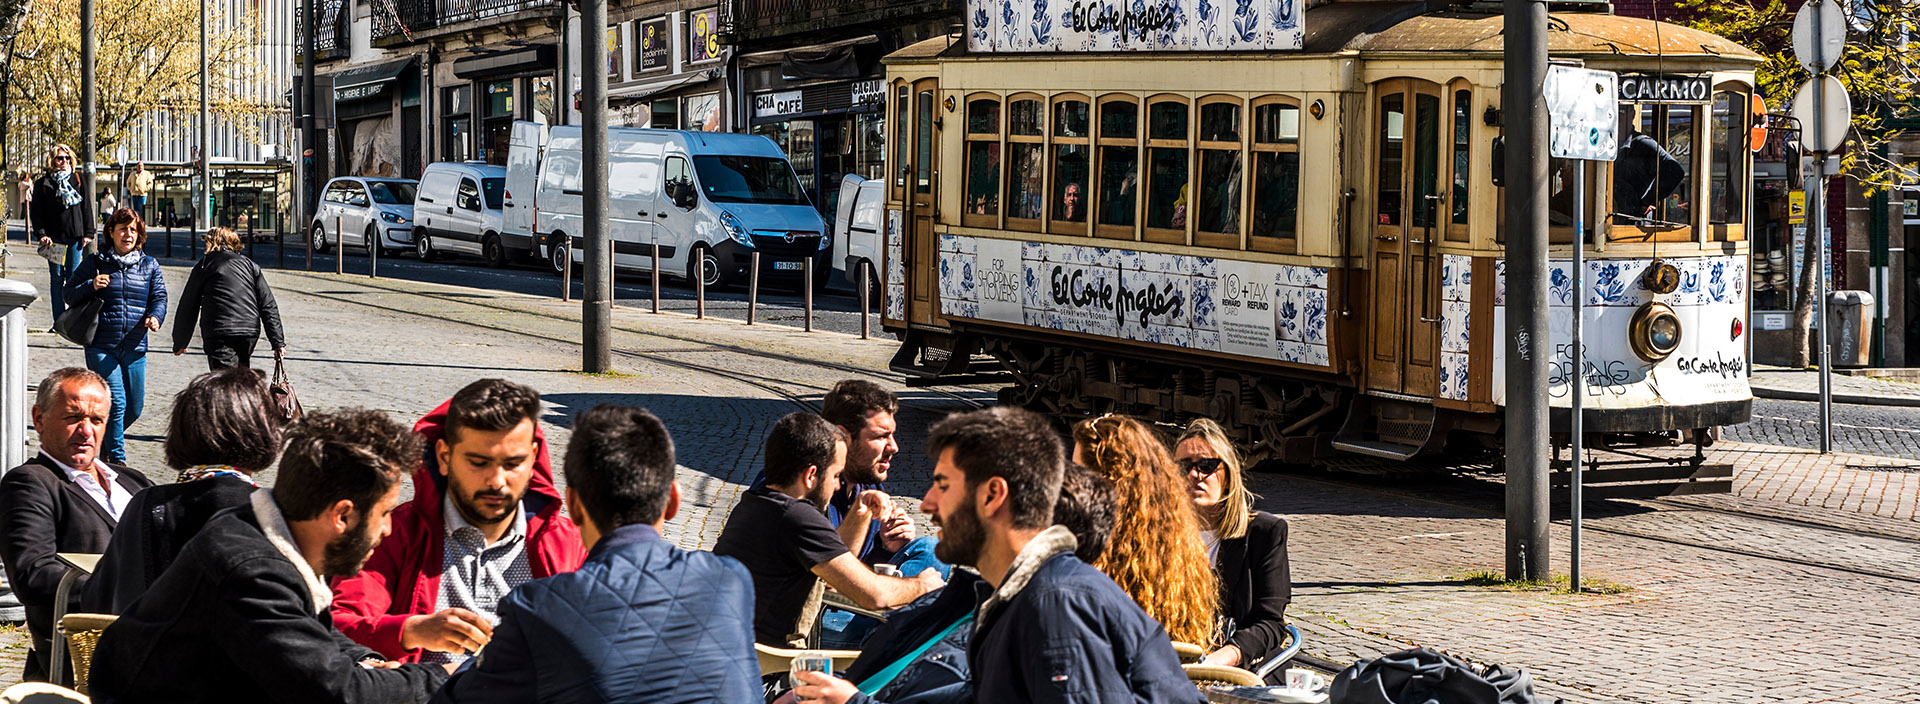 Viver no Porto: o melhor do noroeste de Portugal